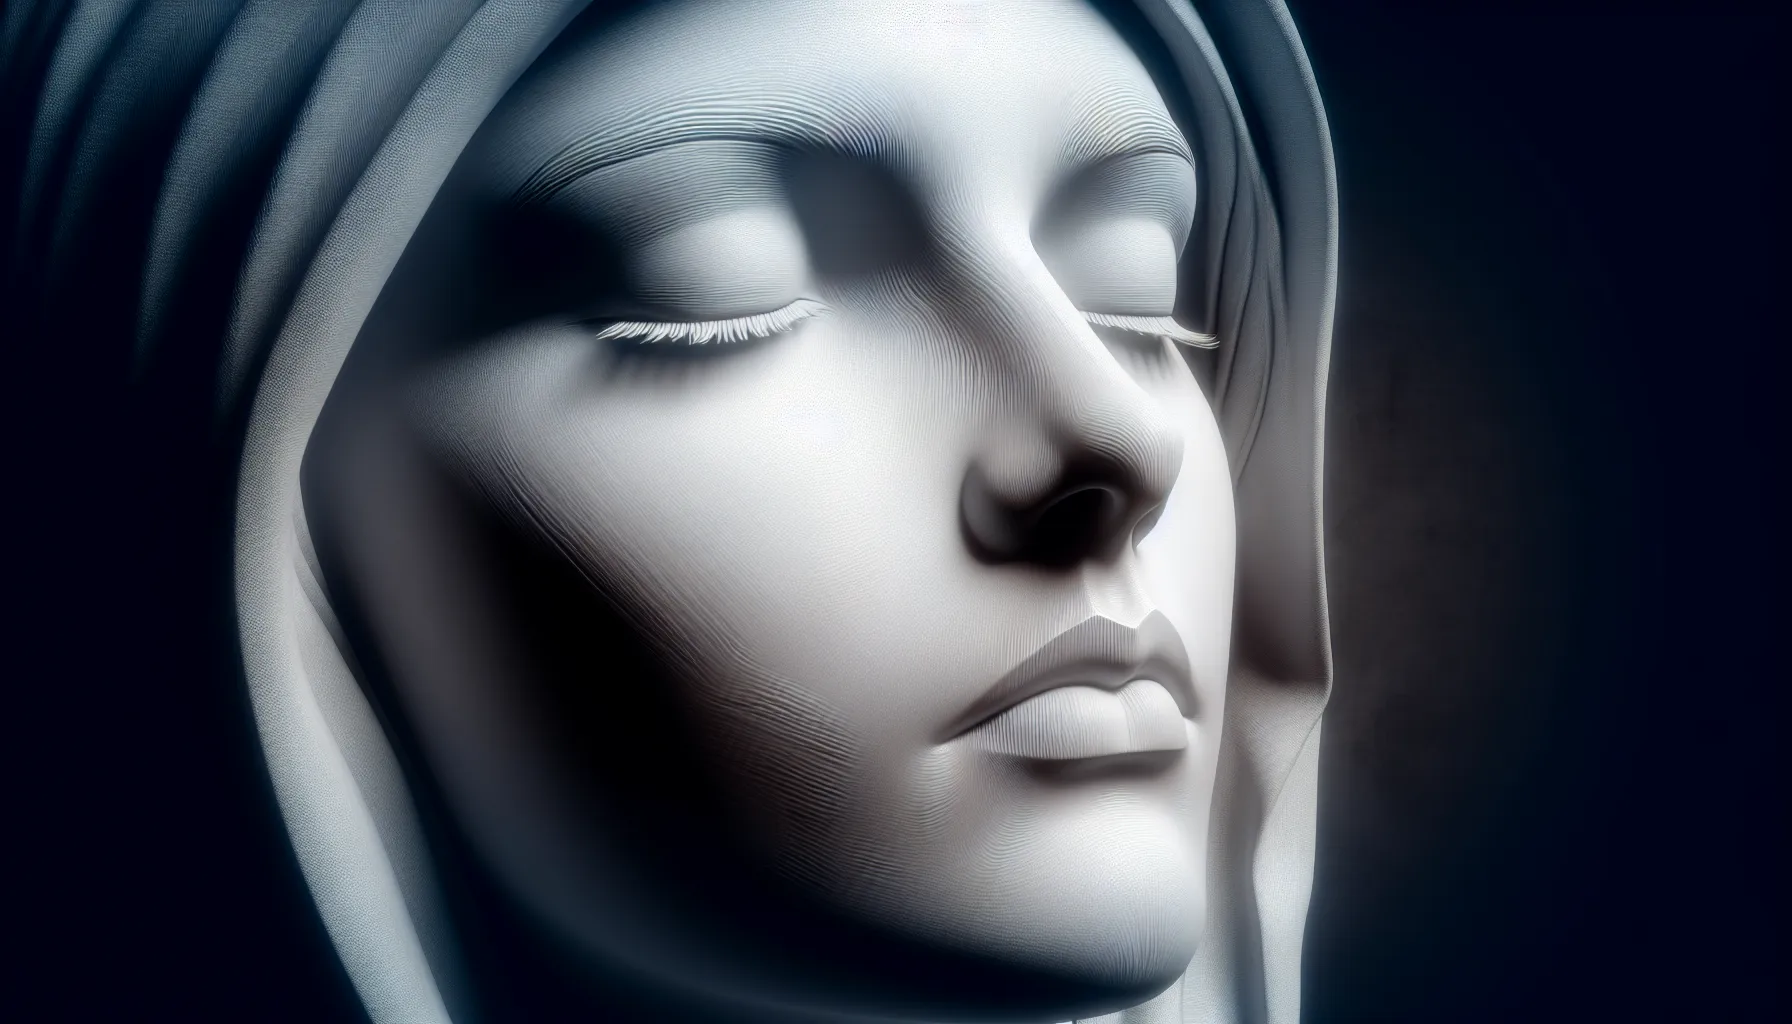 Imagen representativa de una persona con los ojos cerrados y gesto de serenidad, simbolizando confianza en el plan divino.